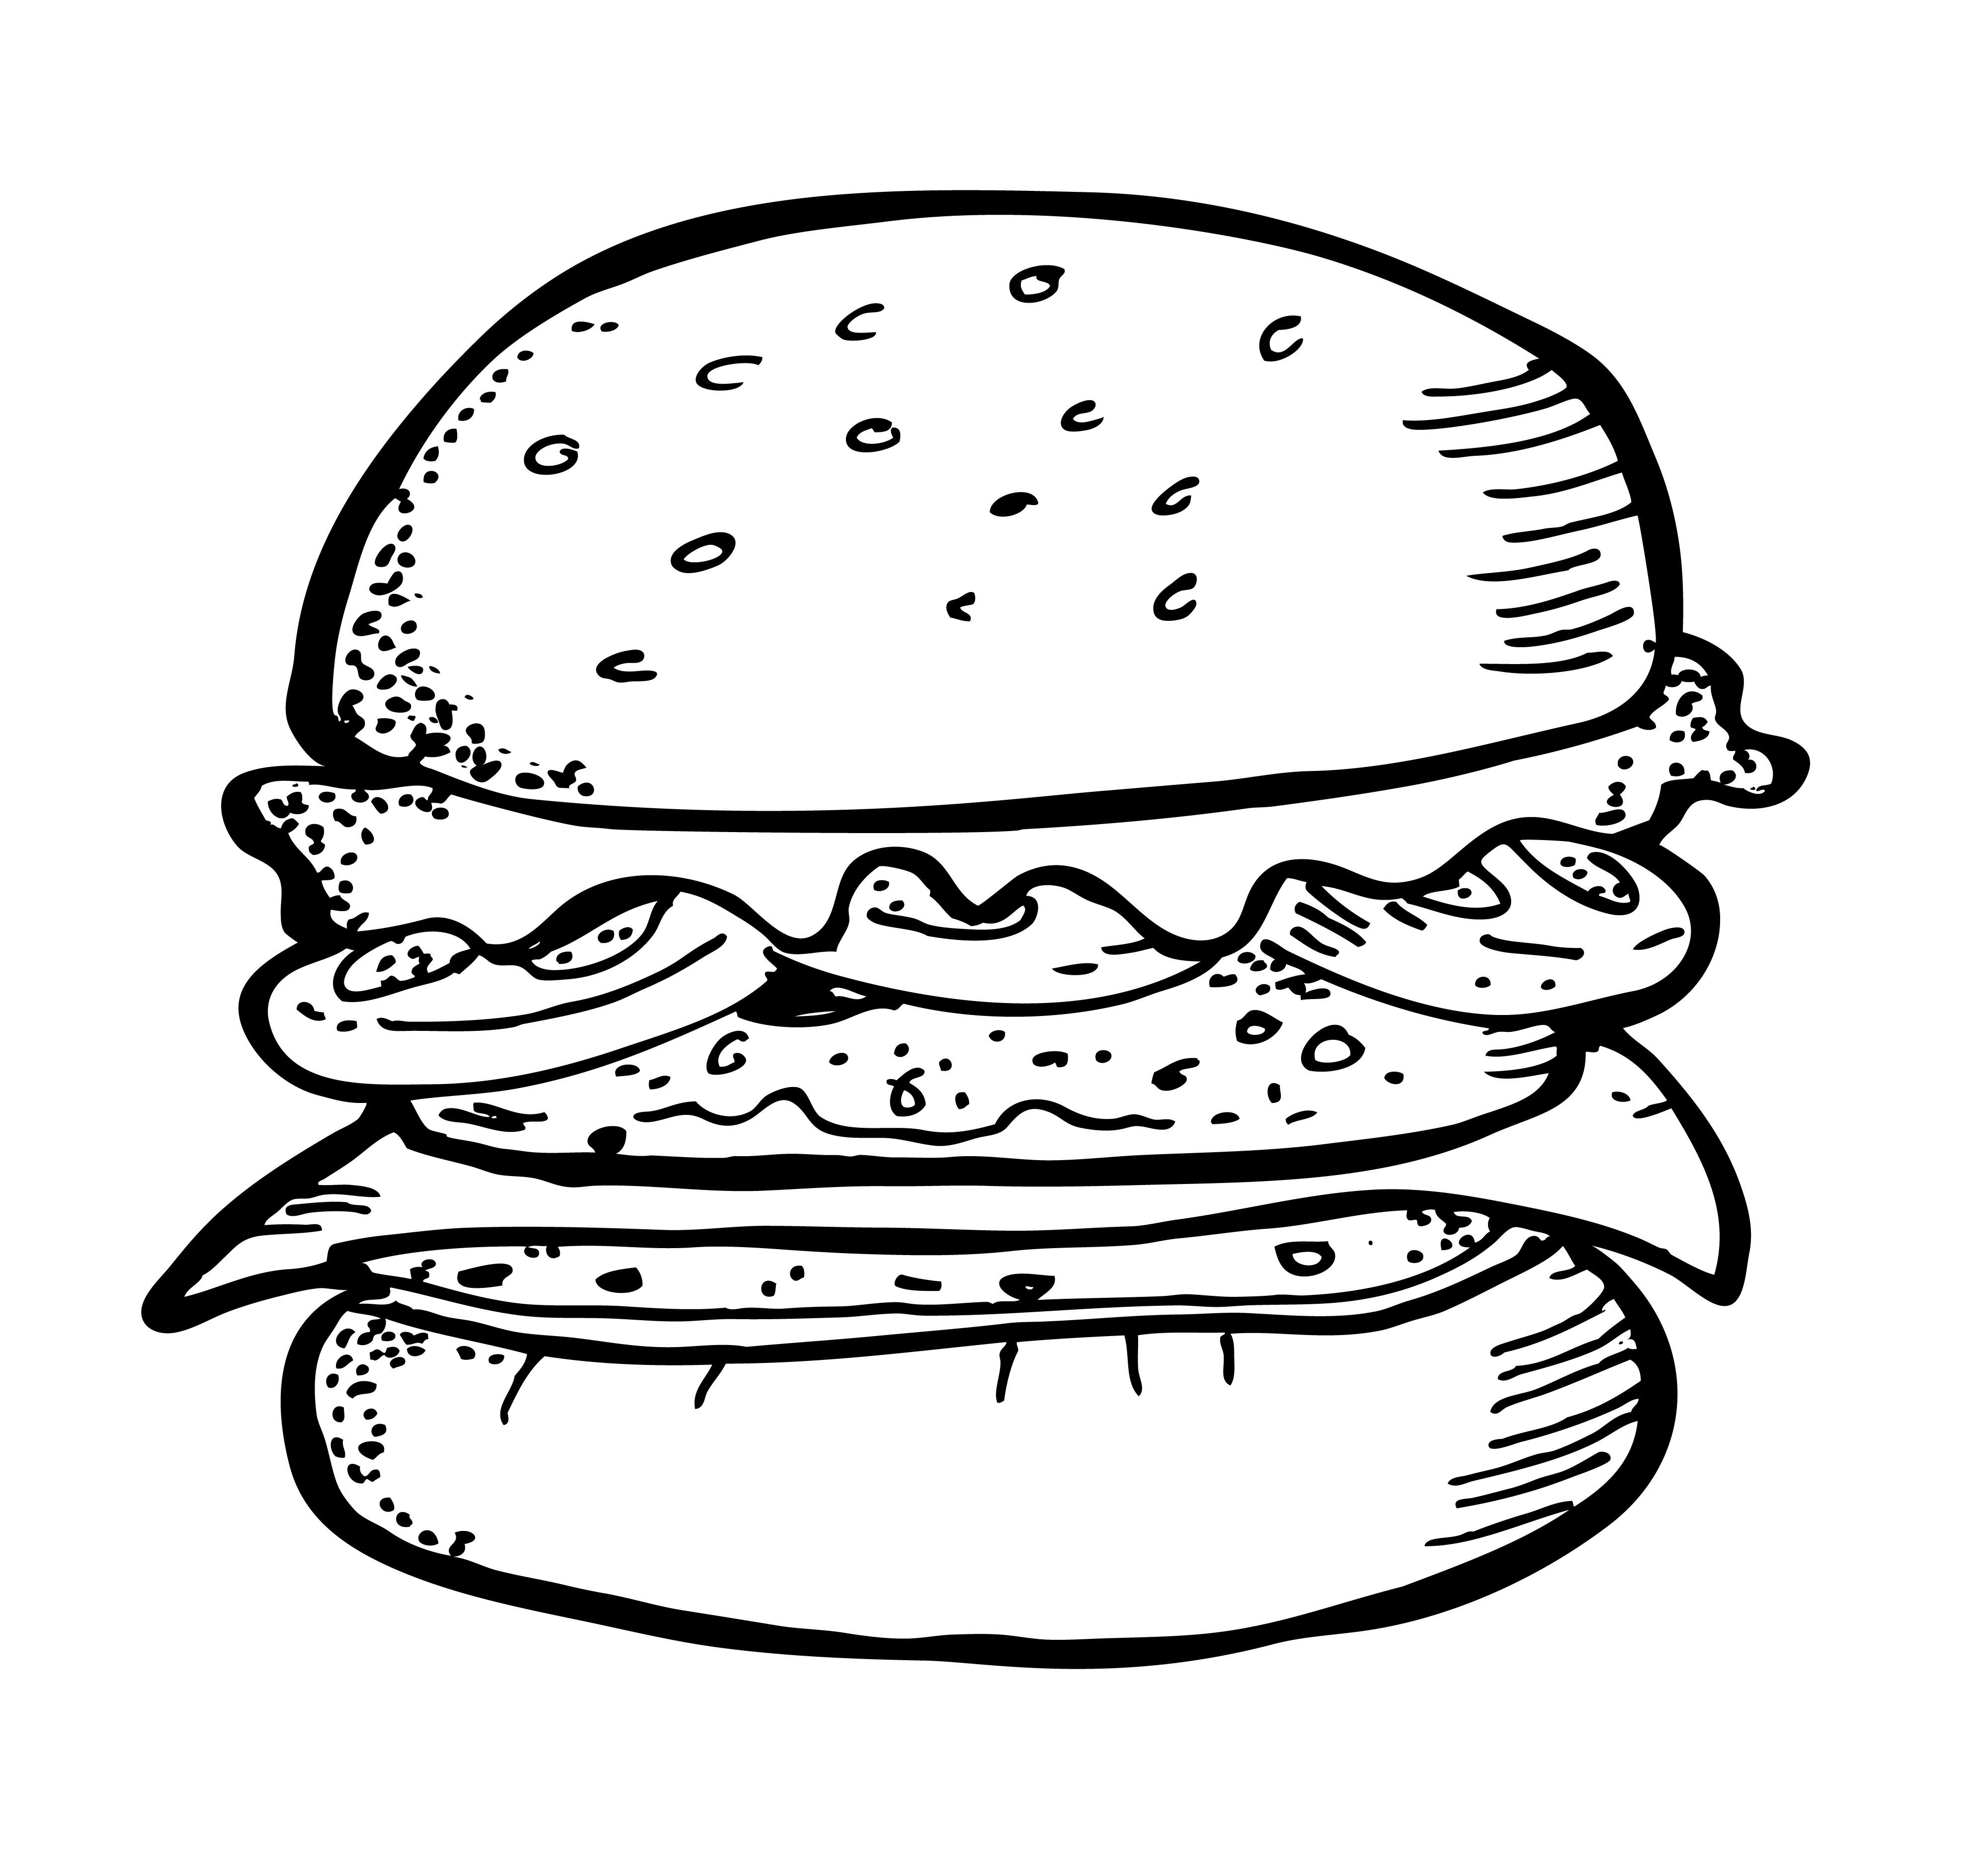 汉堡包怎么画 线描图片